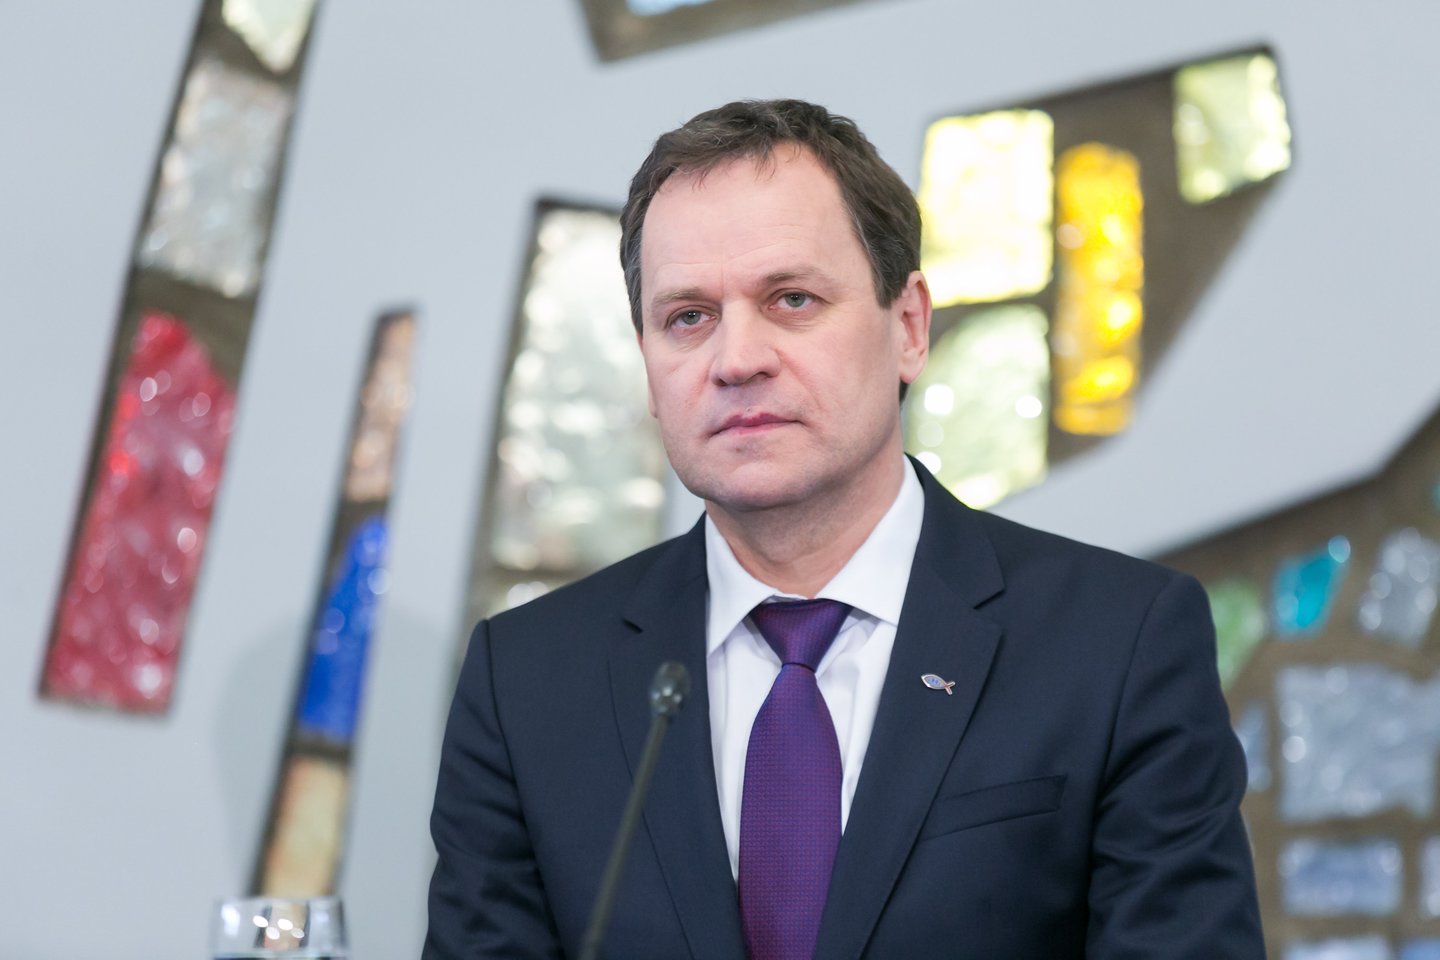  V.Tomaševskis sako, kad partijoje dar bus svarstoma, ar apsimoka prisidėti prie valdančiosios koalicijos, kai iki kitų Seimo rinkimų lieka 15 mėnesių.<br> T.Bauro nuotr.